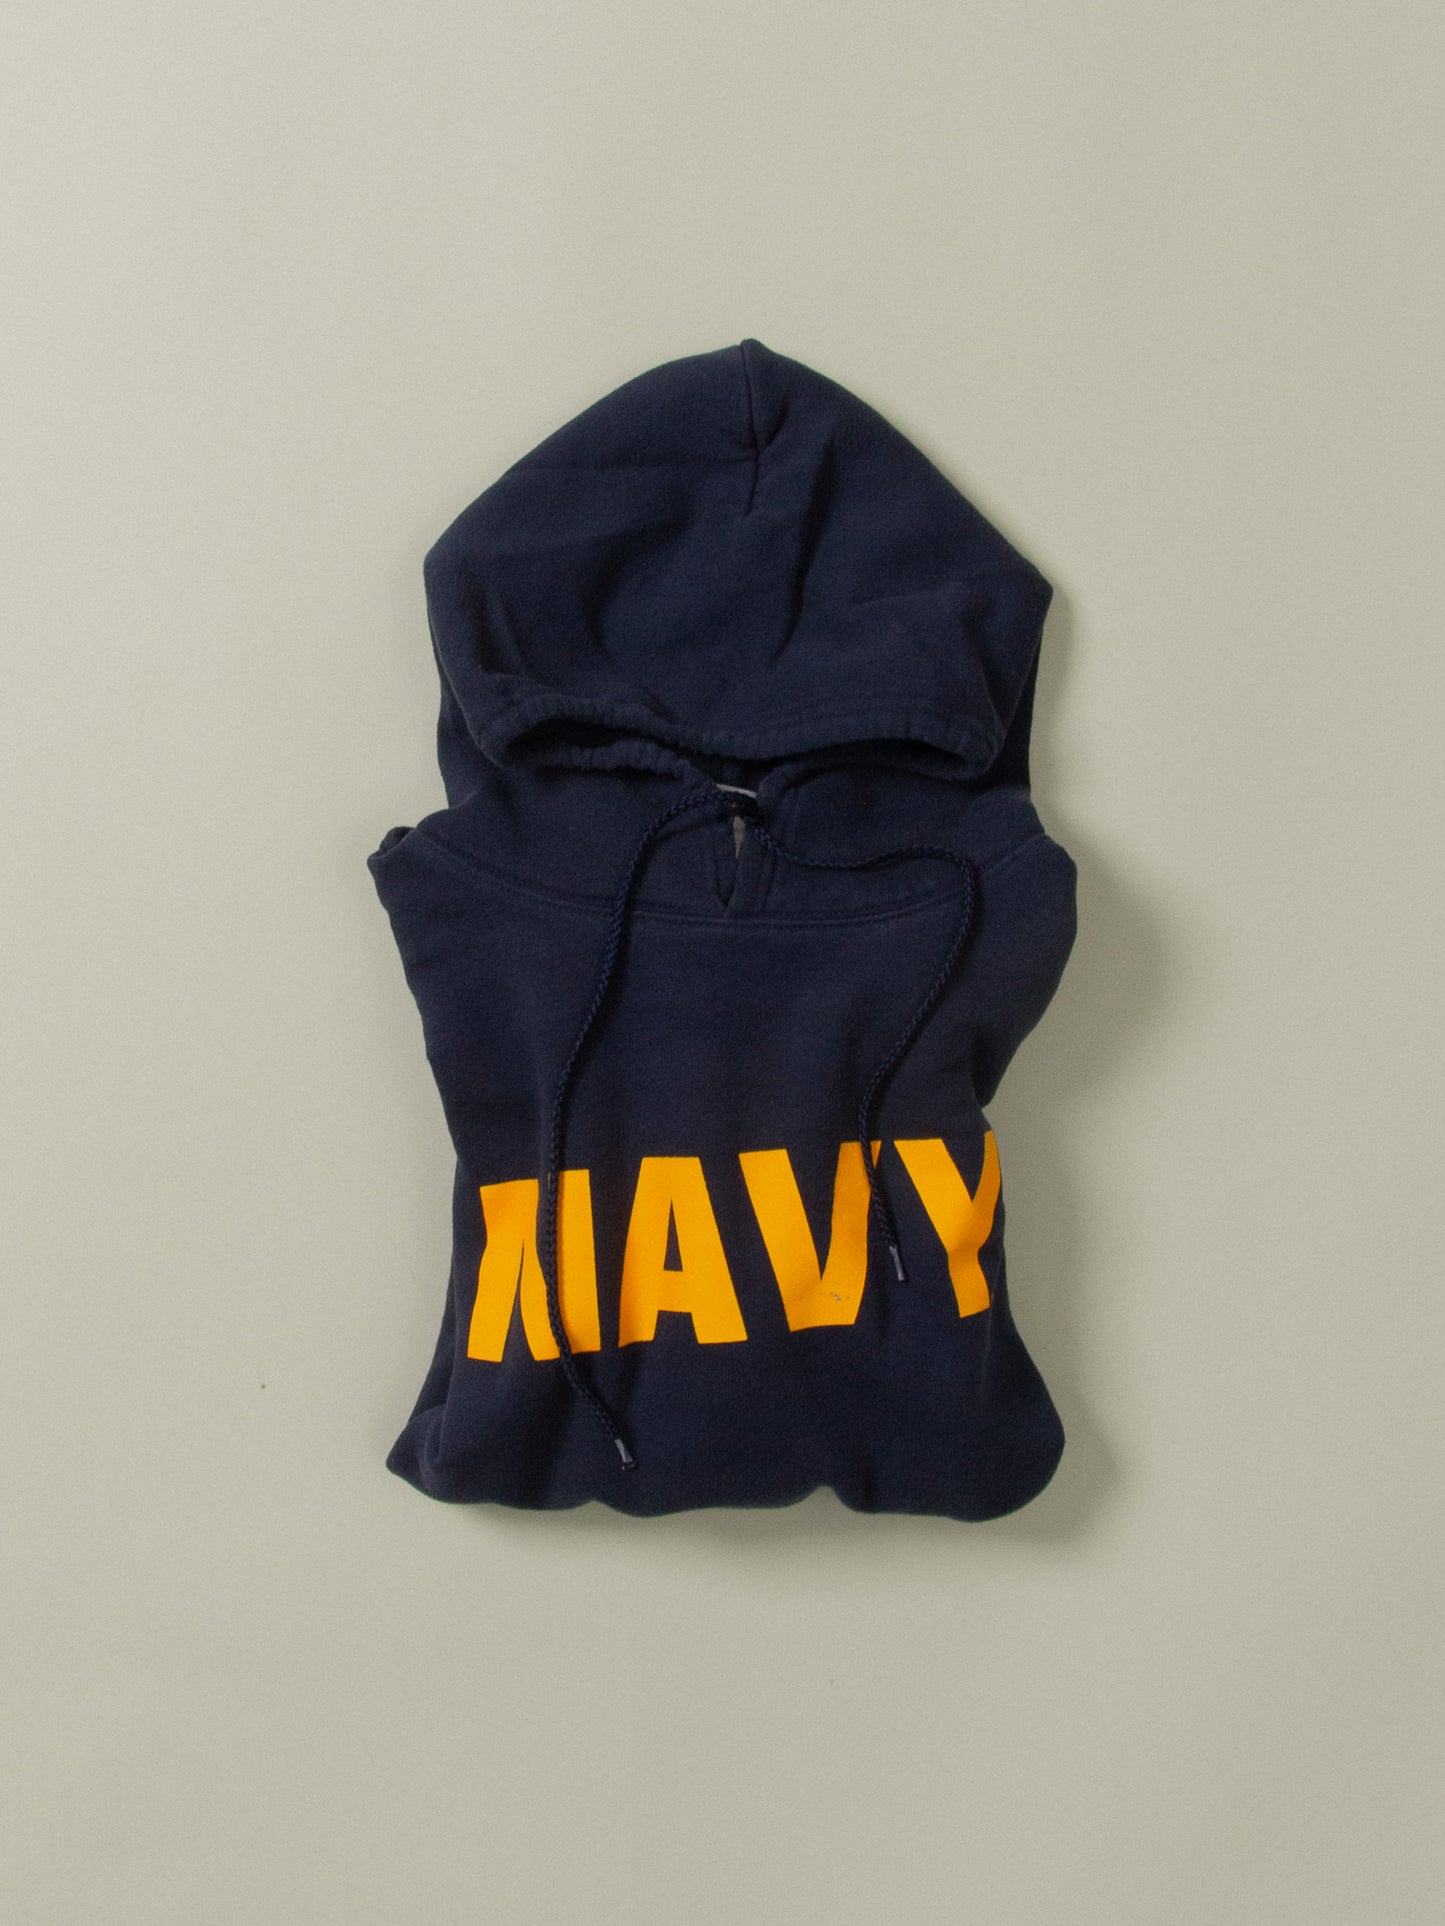 Vtg US Navy Hoodie (L)